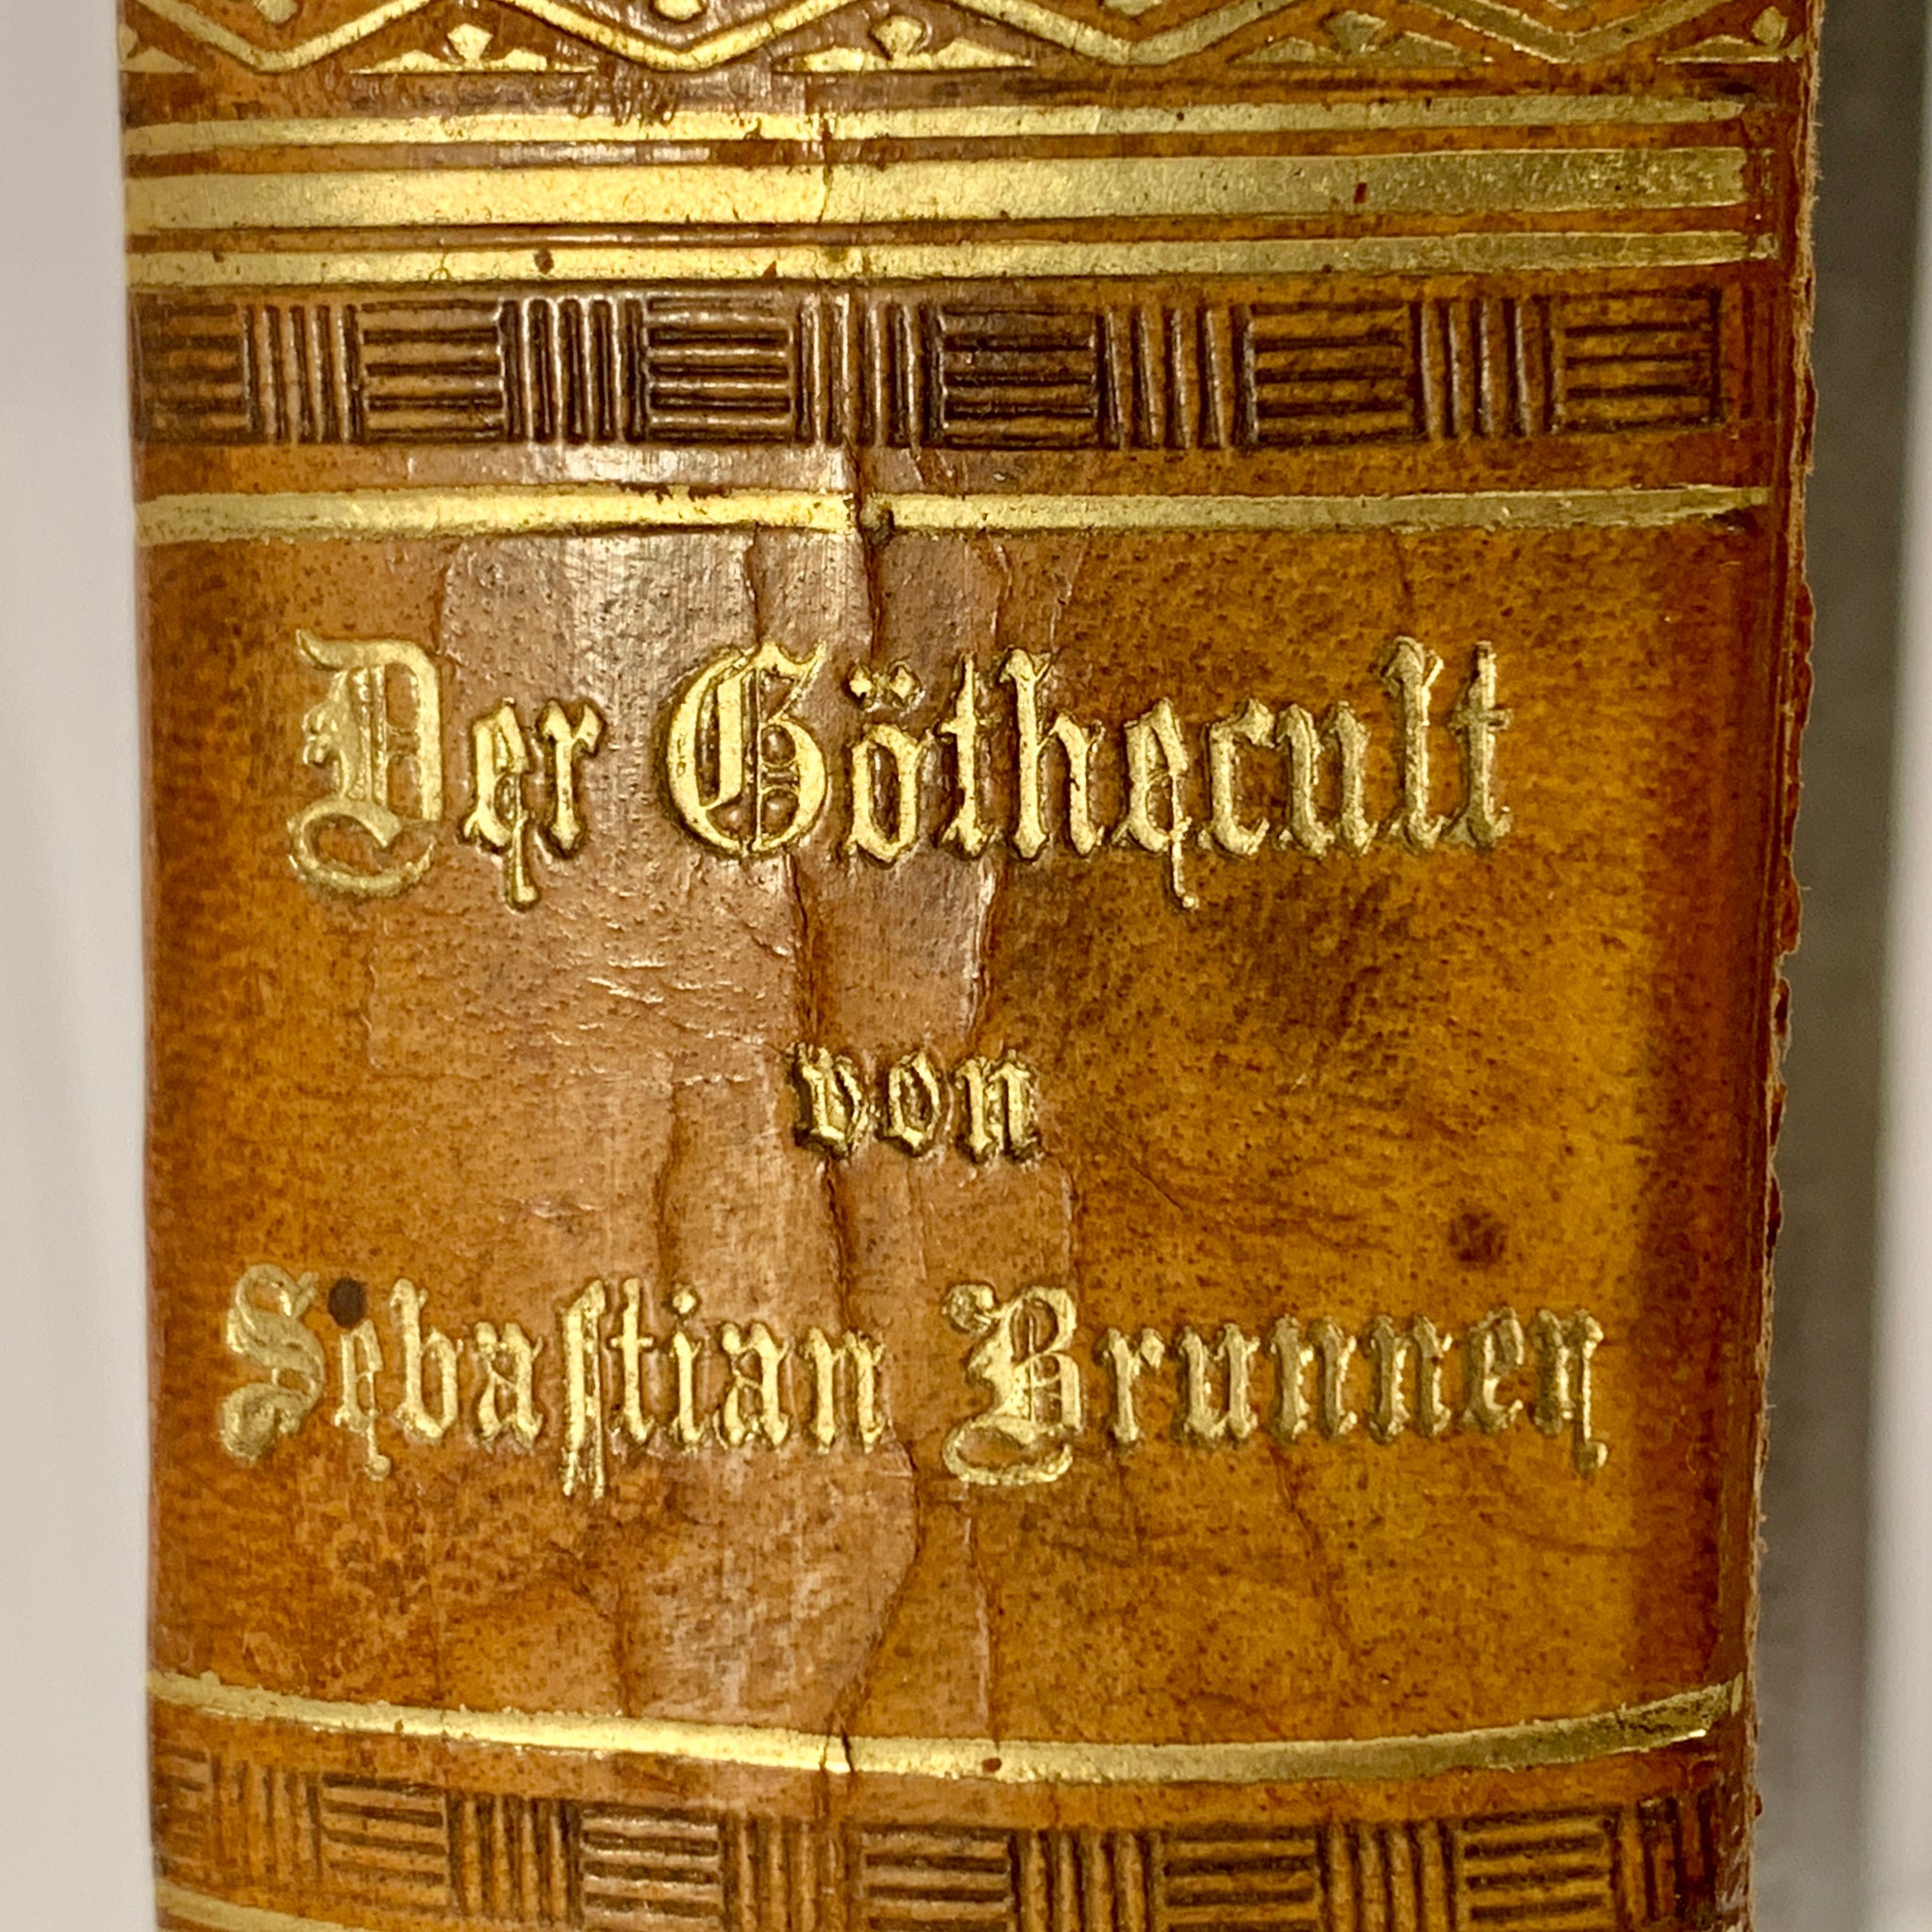 Sebastian Brunner, Der Goethecult.., 1. Udgave, fra 1889. Antikvarisk tysk bog.